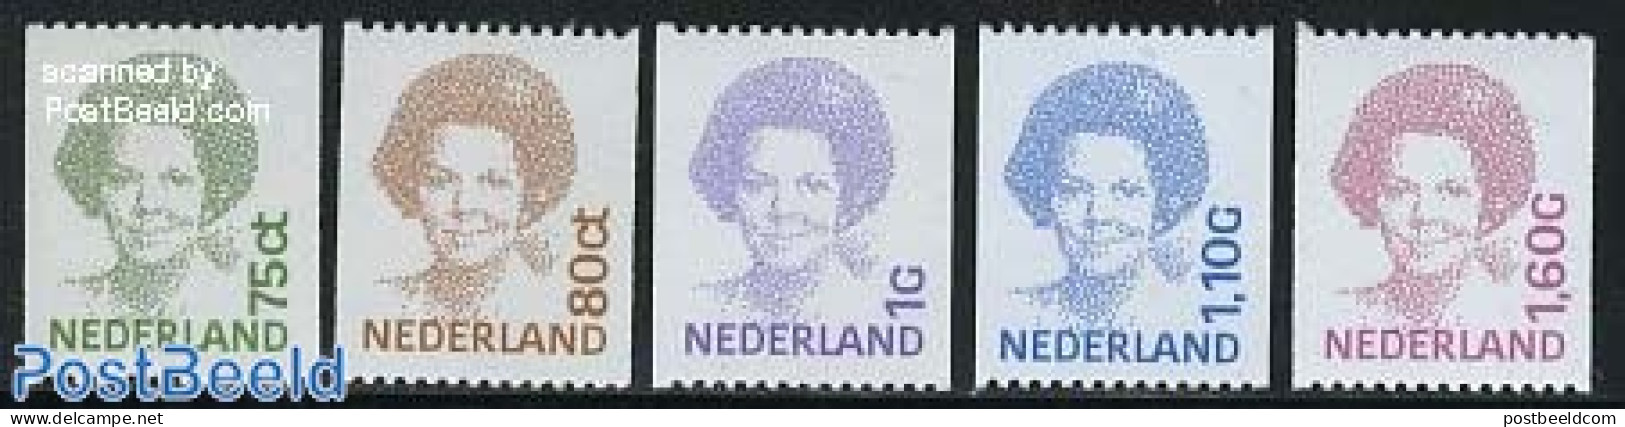 Netherlands 1991 Definitives, Coil Stamps 5v, Mint NH - Neufs